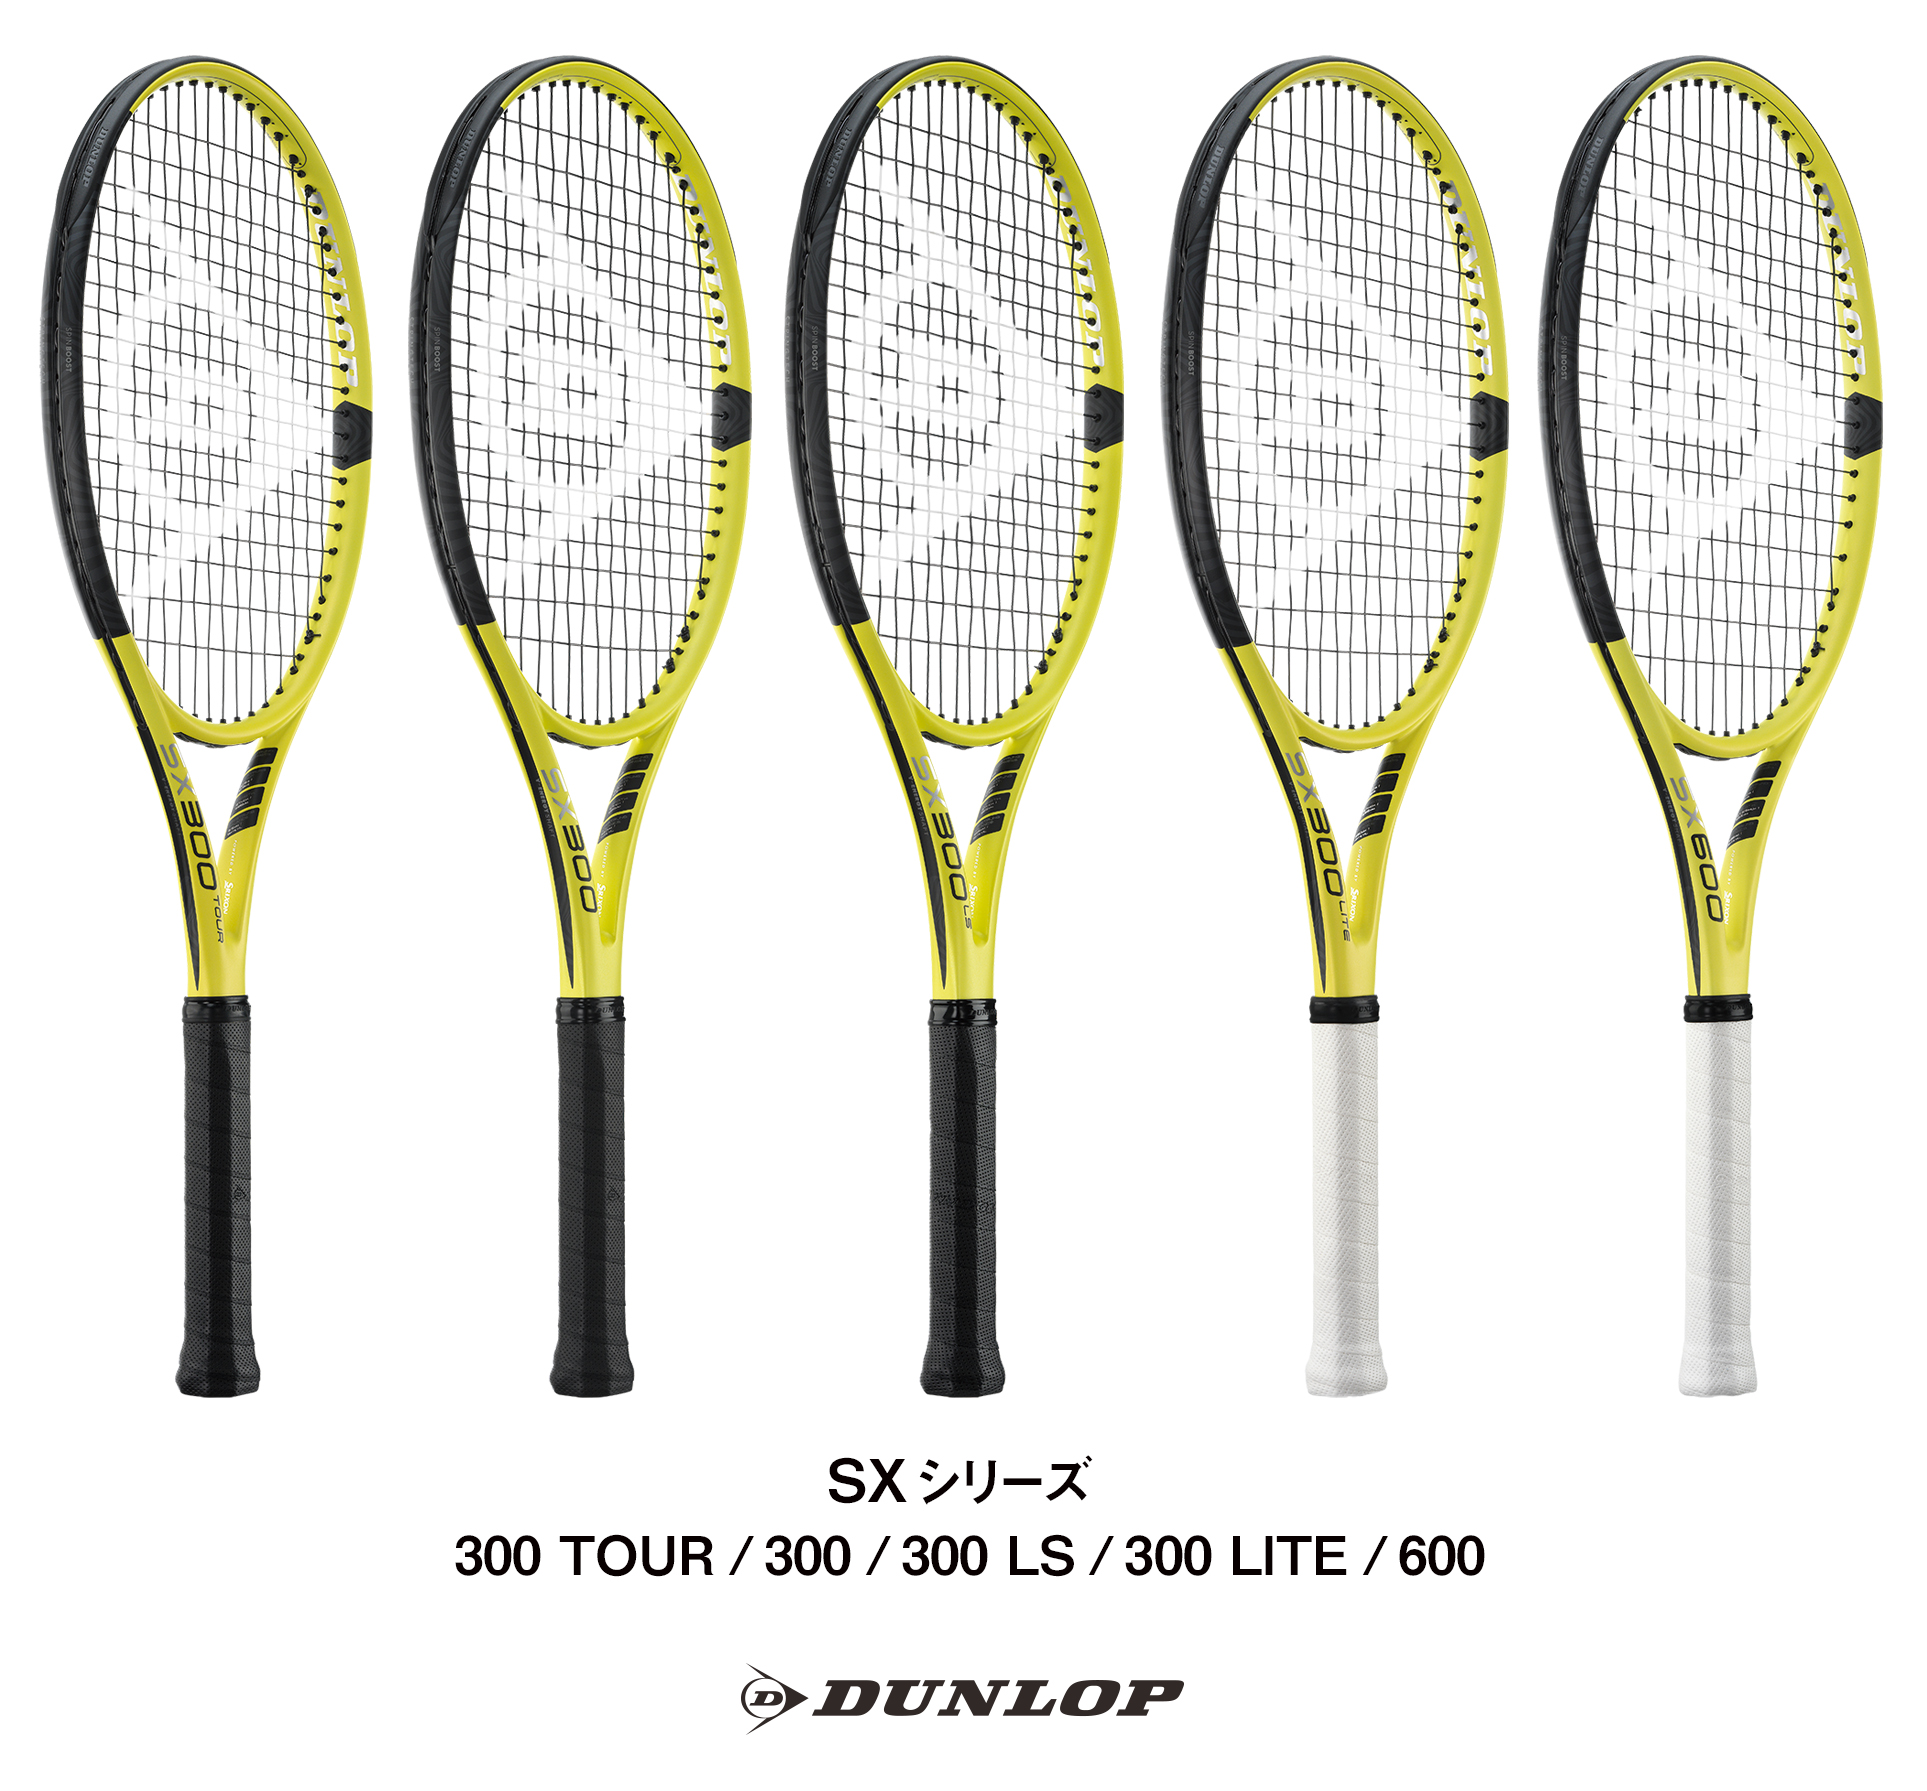 ダンロップテニスラケットNEW「SX」シリーズを新発売 ～弾道補正機能の進化でスピンのかかりやすさを体感できる～ | 住友ゴム工業